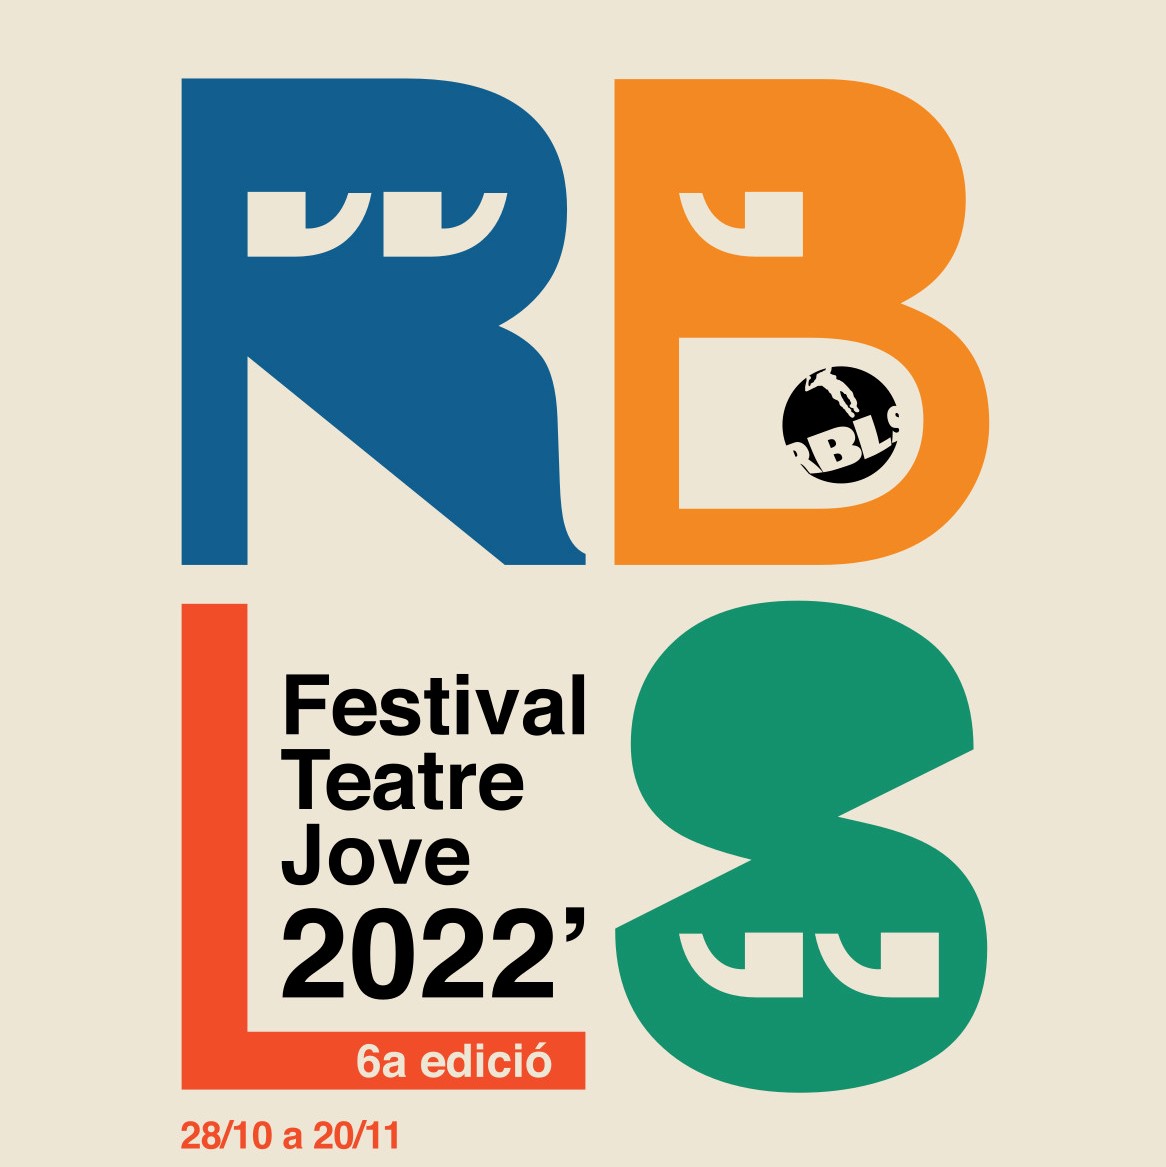 RBLS Festival Teatre Jove 2022